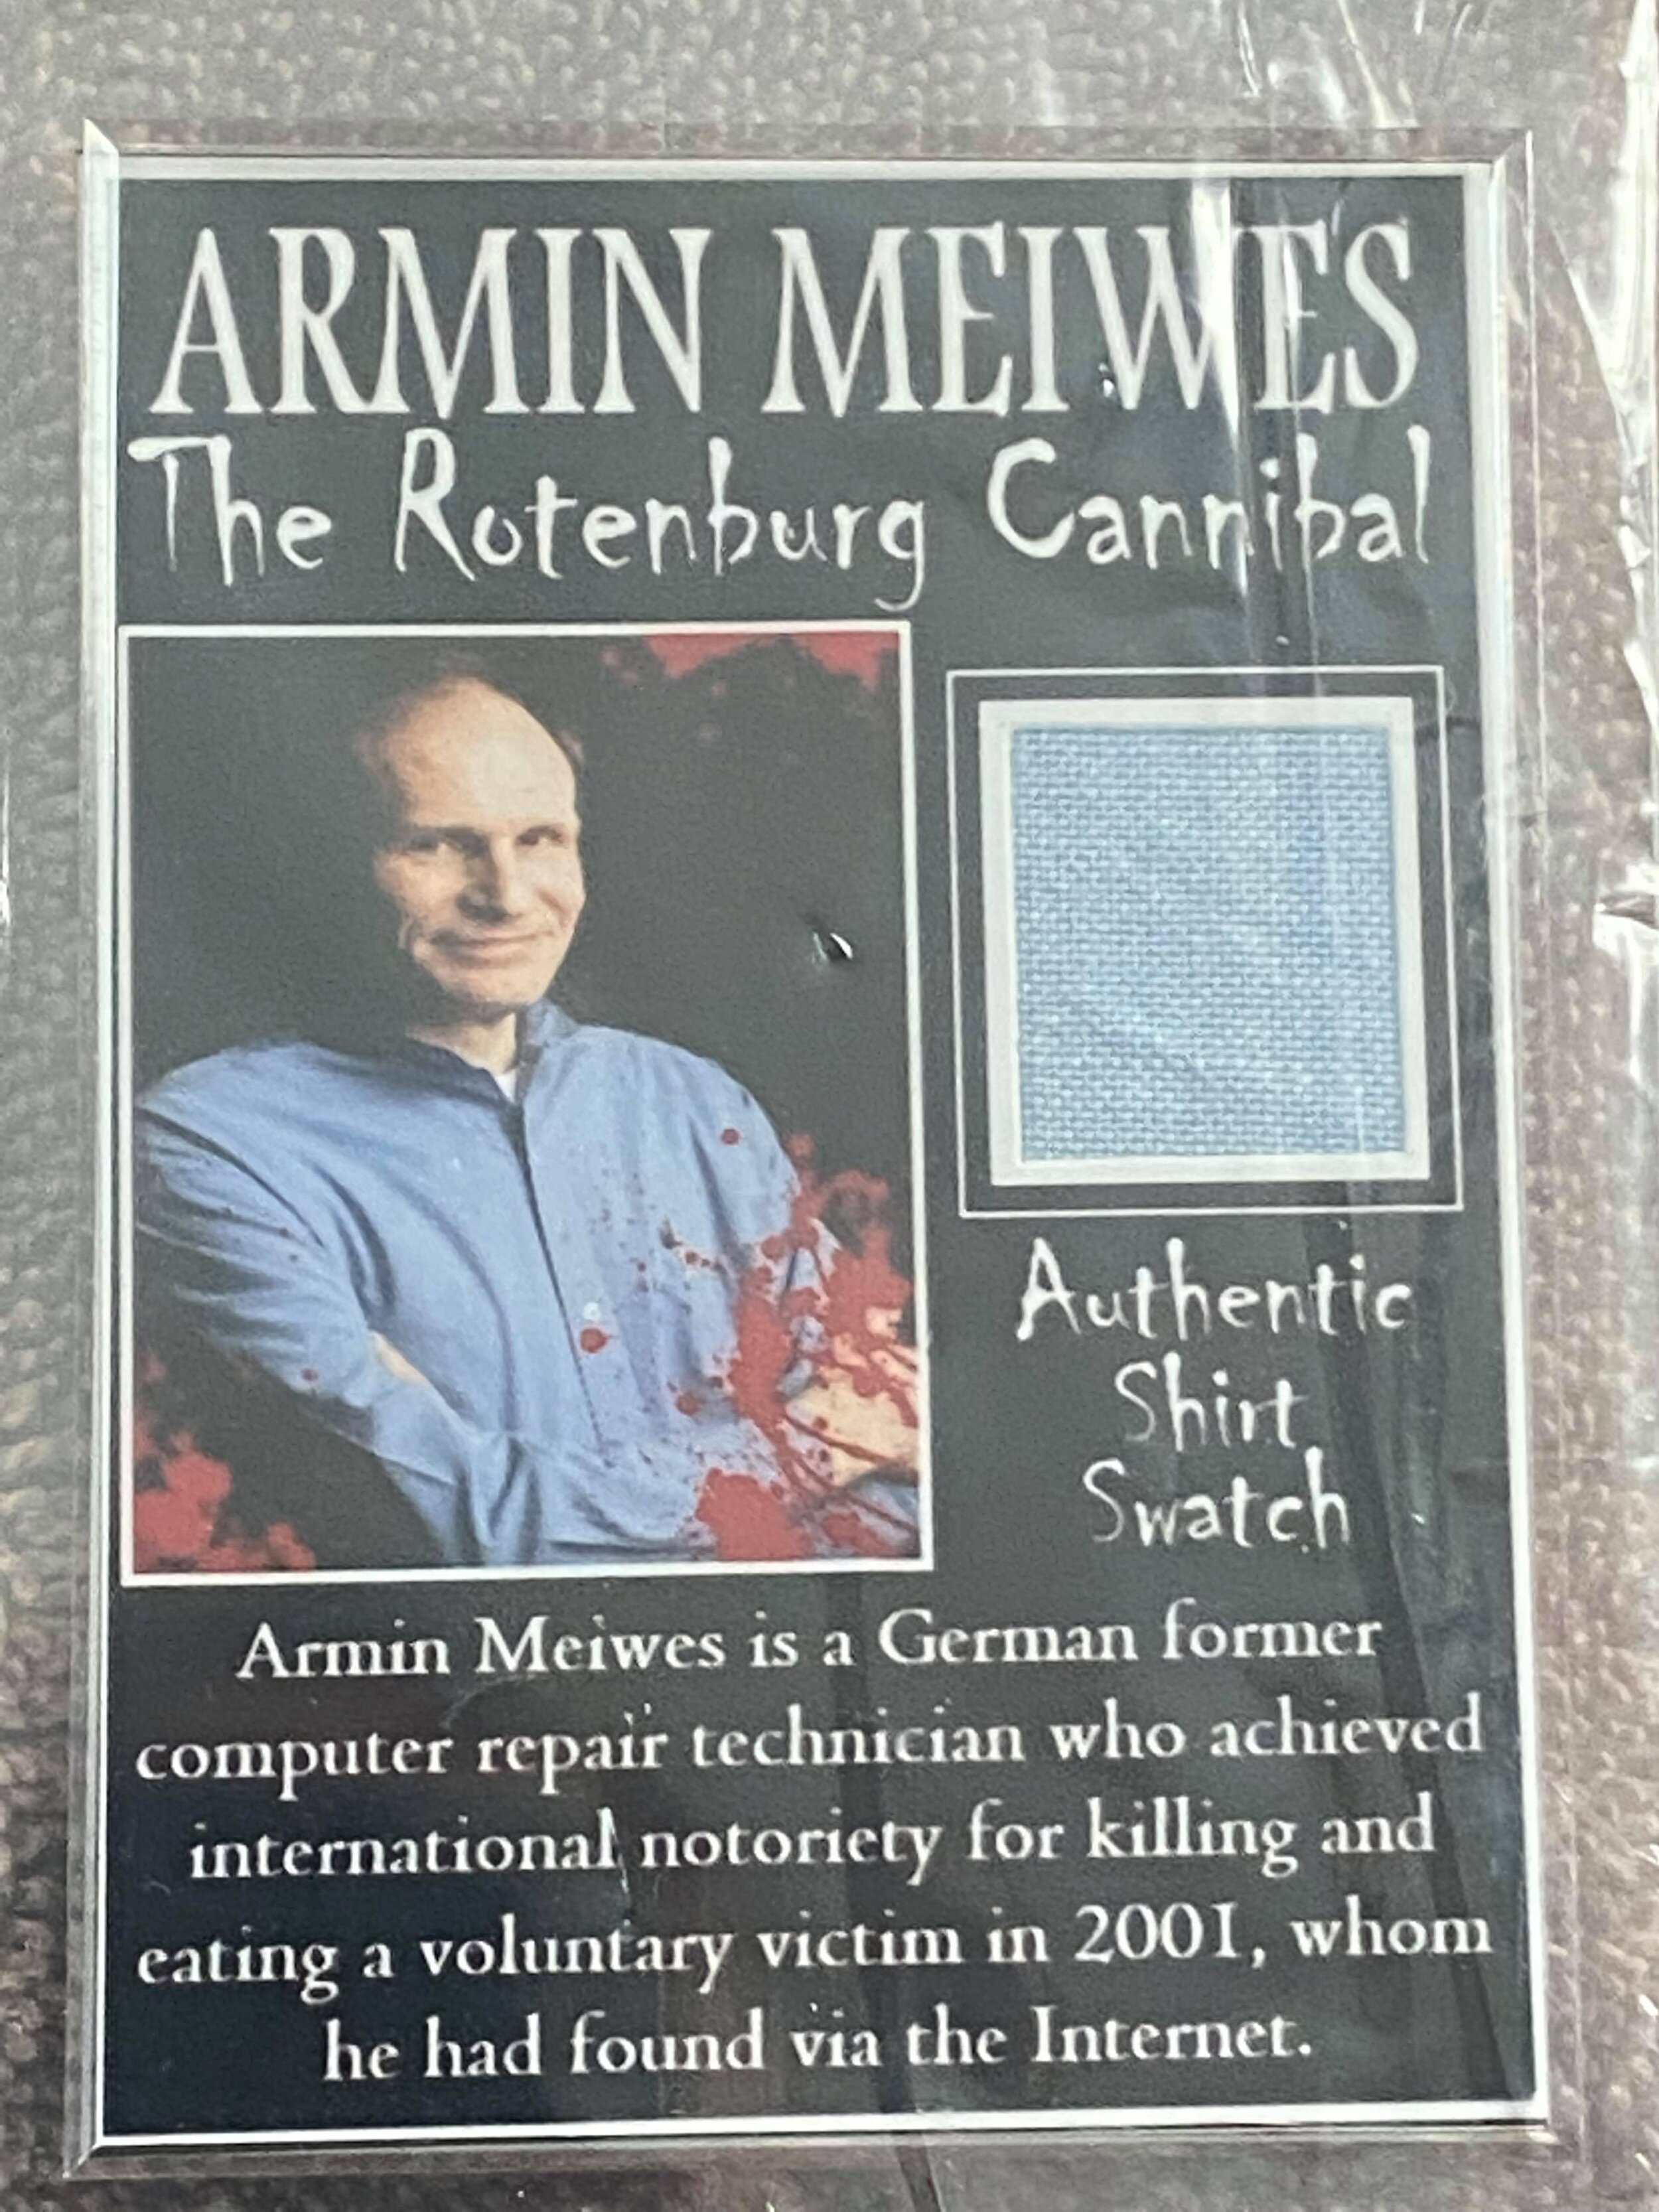 Armin meiwes